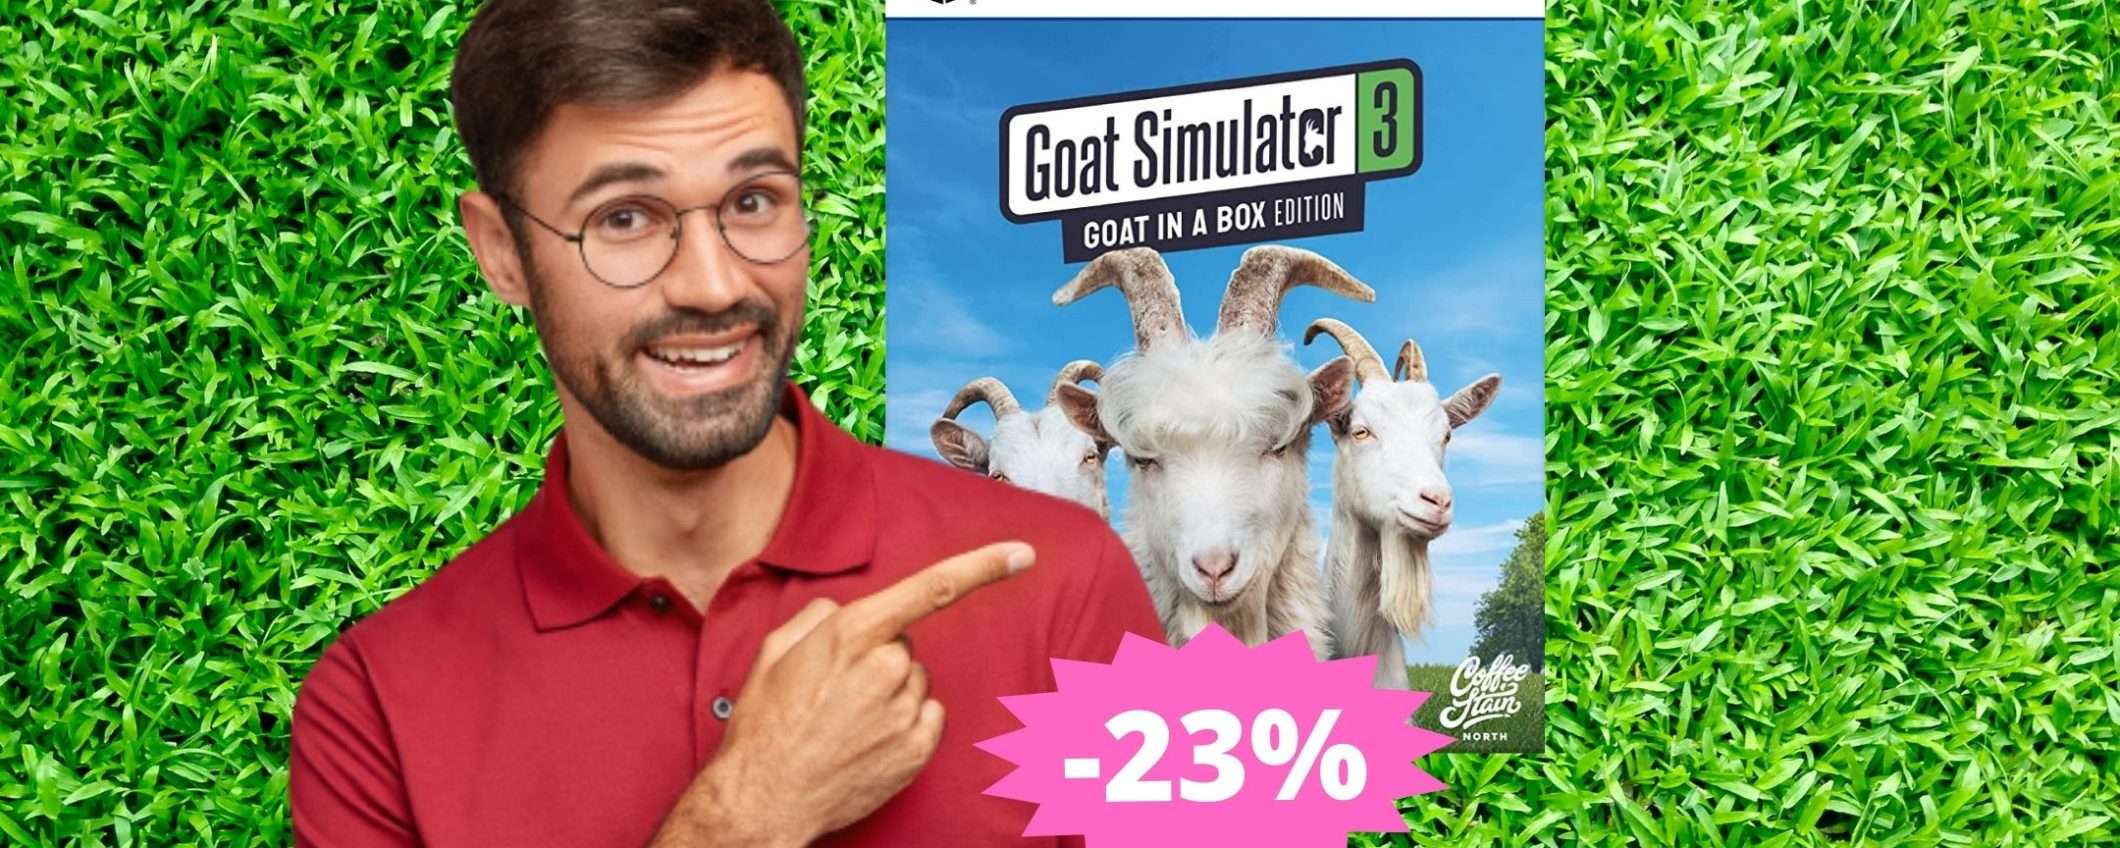 Goat Simulator 3 per PS5: l'irriverente gioco in super sconto su Amazon